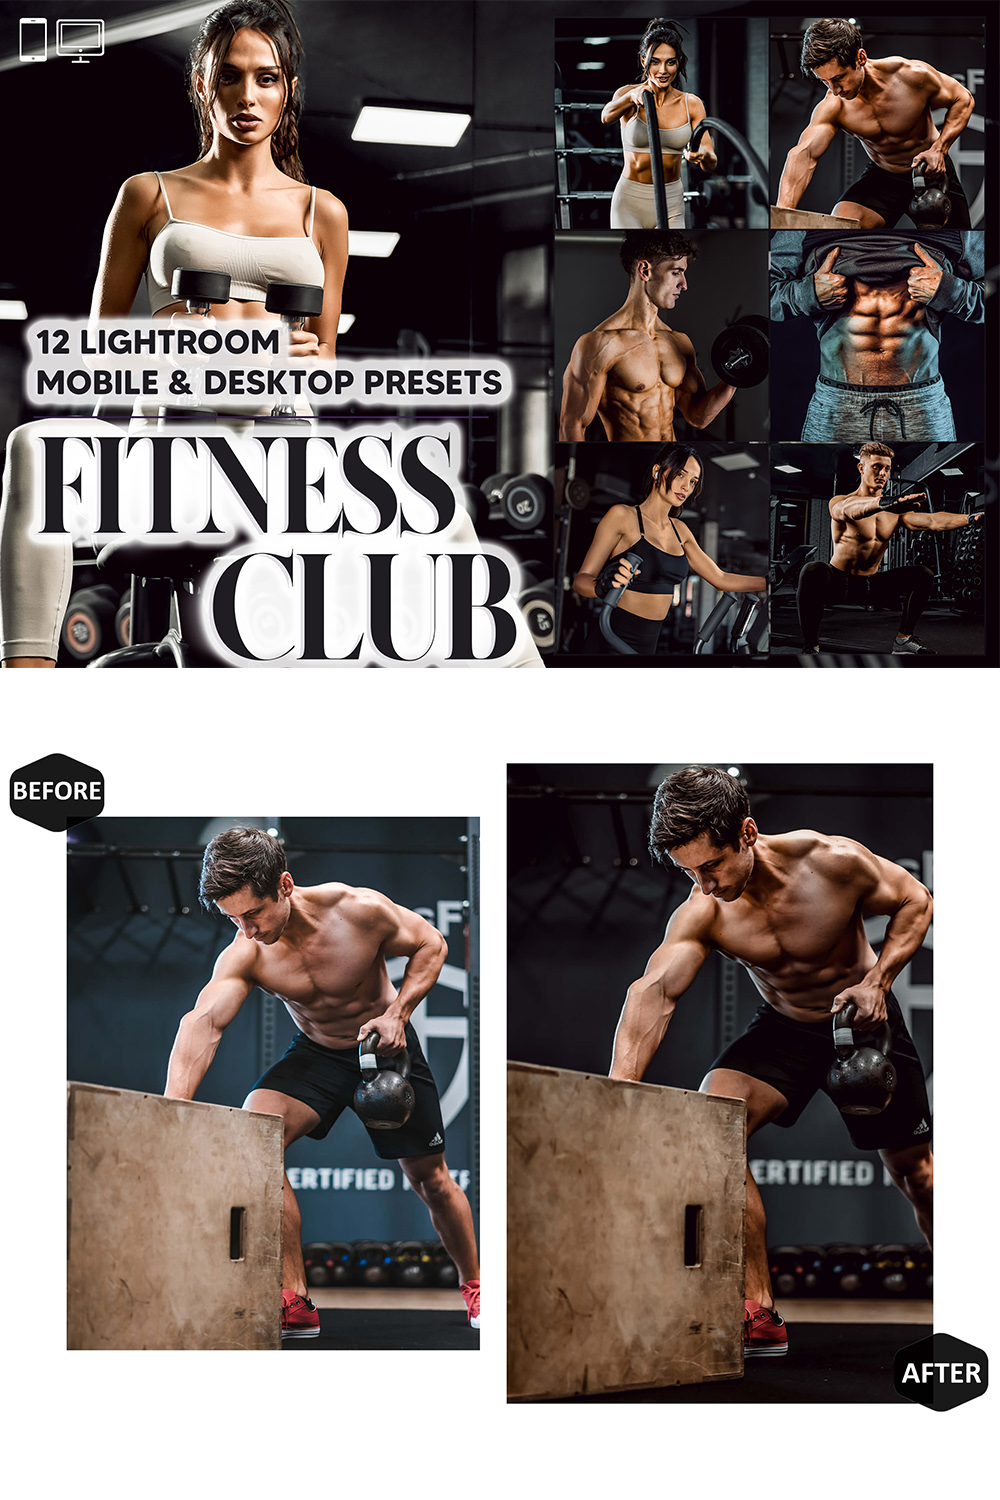 12 Fitness Club Lightroom Presets, Bodybuilding Mobile Preset, Sport Desktop, Lifestyle Blogger Theme For Instagram, LR Filter DNG Portrait pinterest preview image.